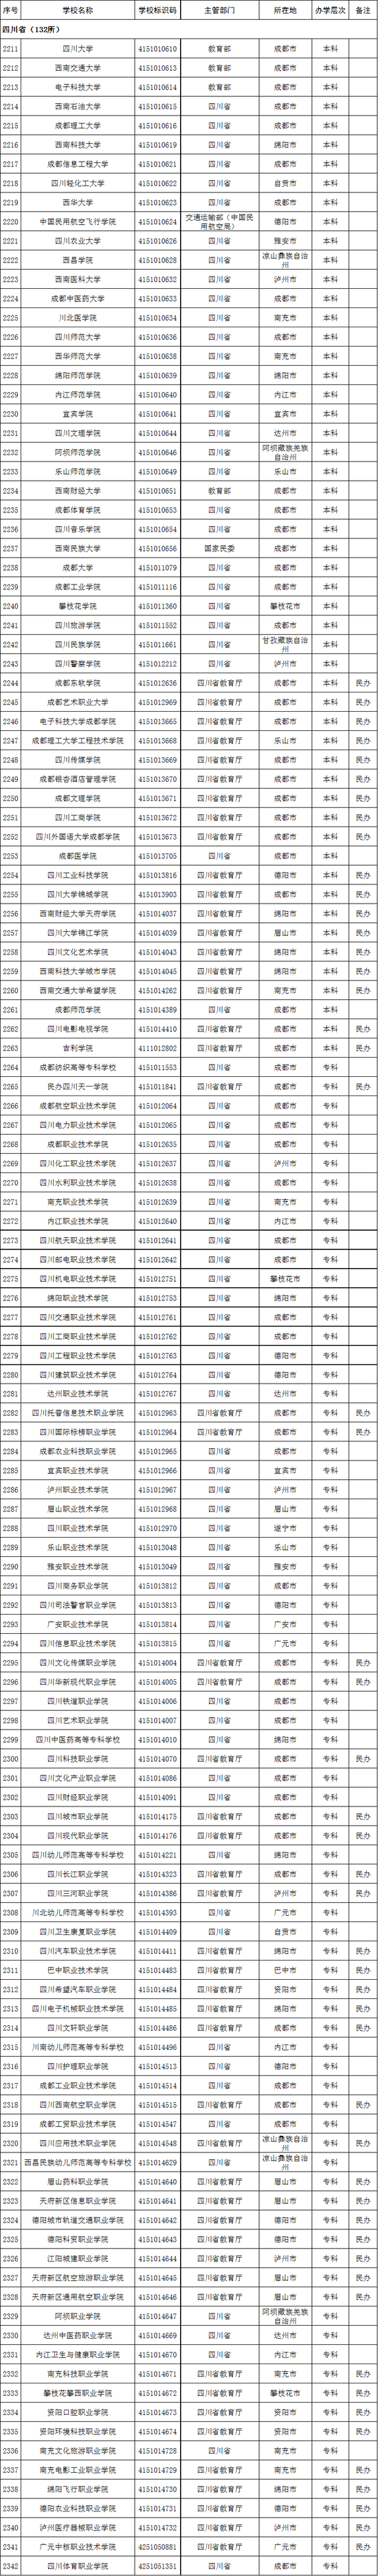 四川省2020年高校名单(132所)